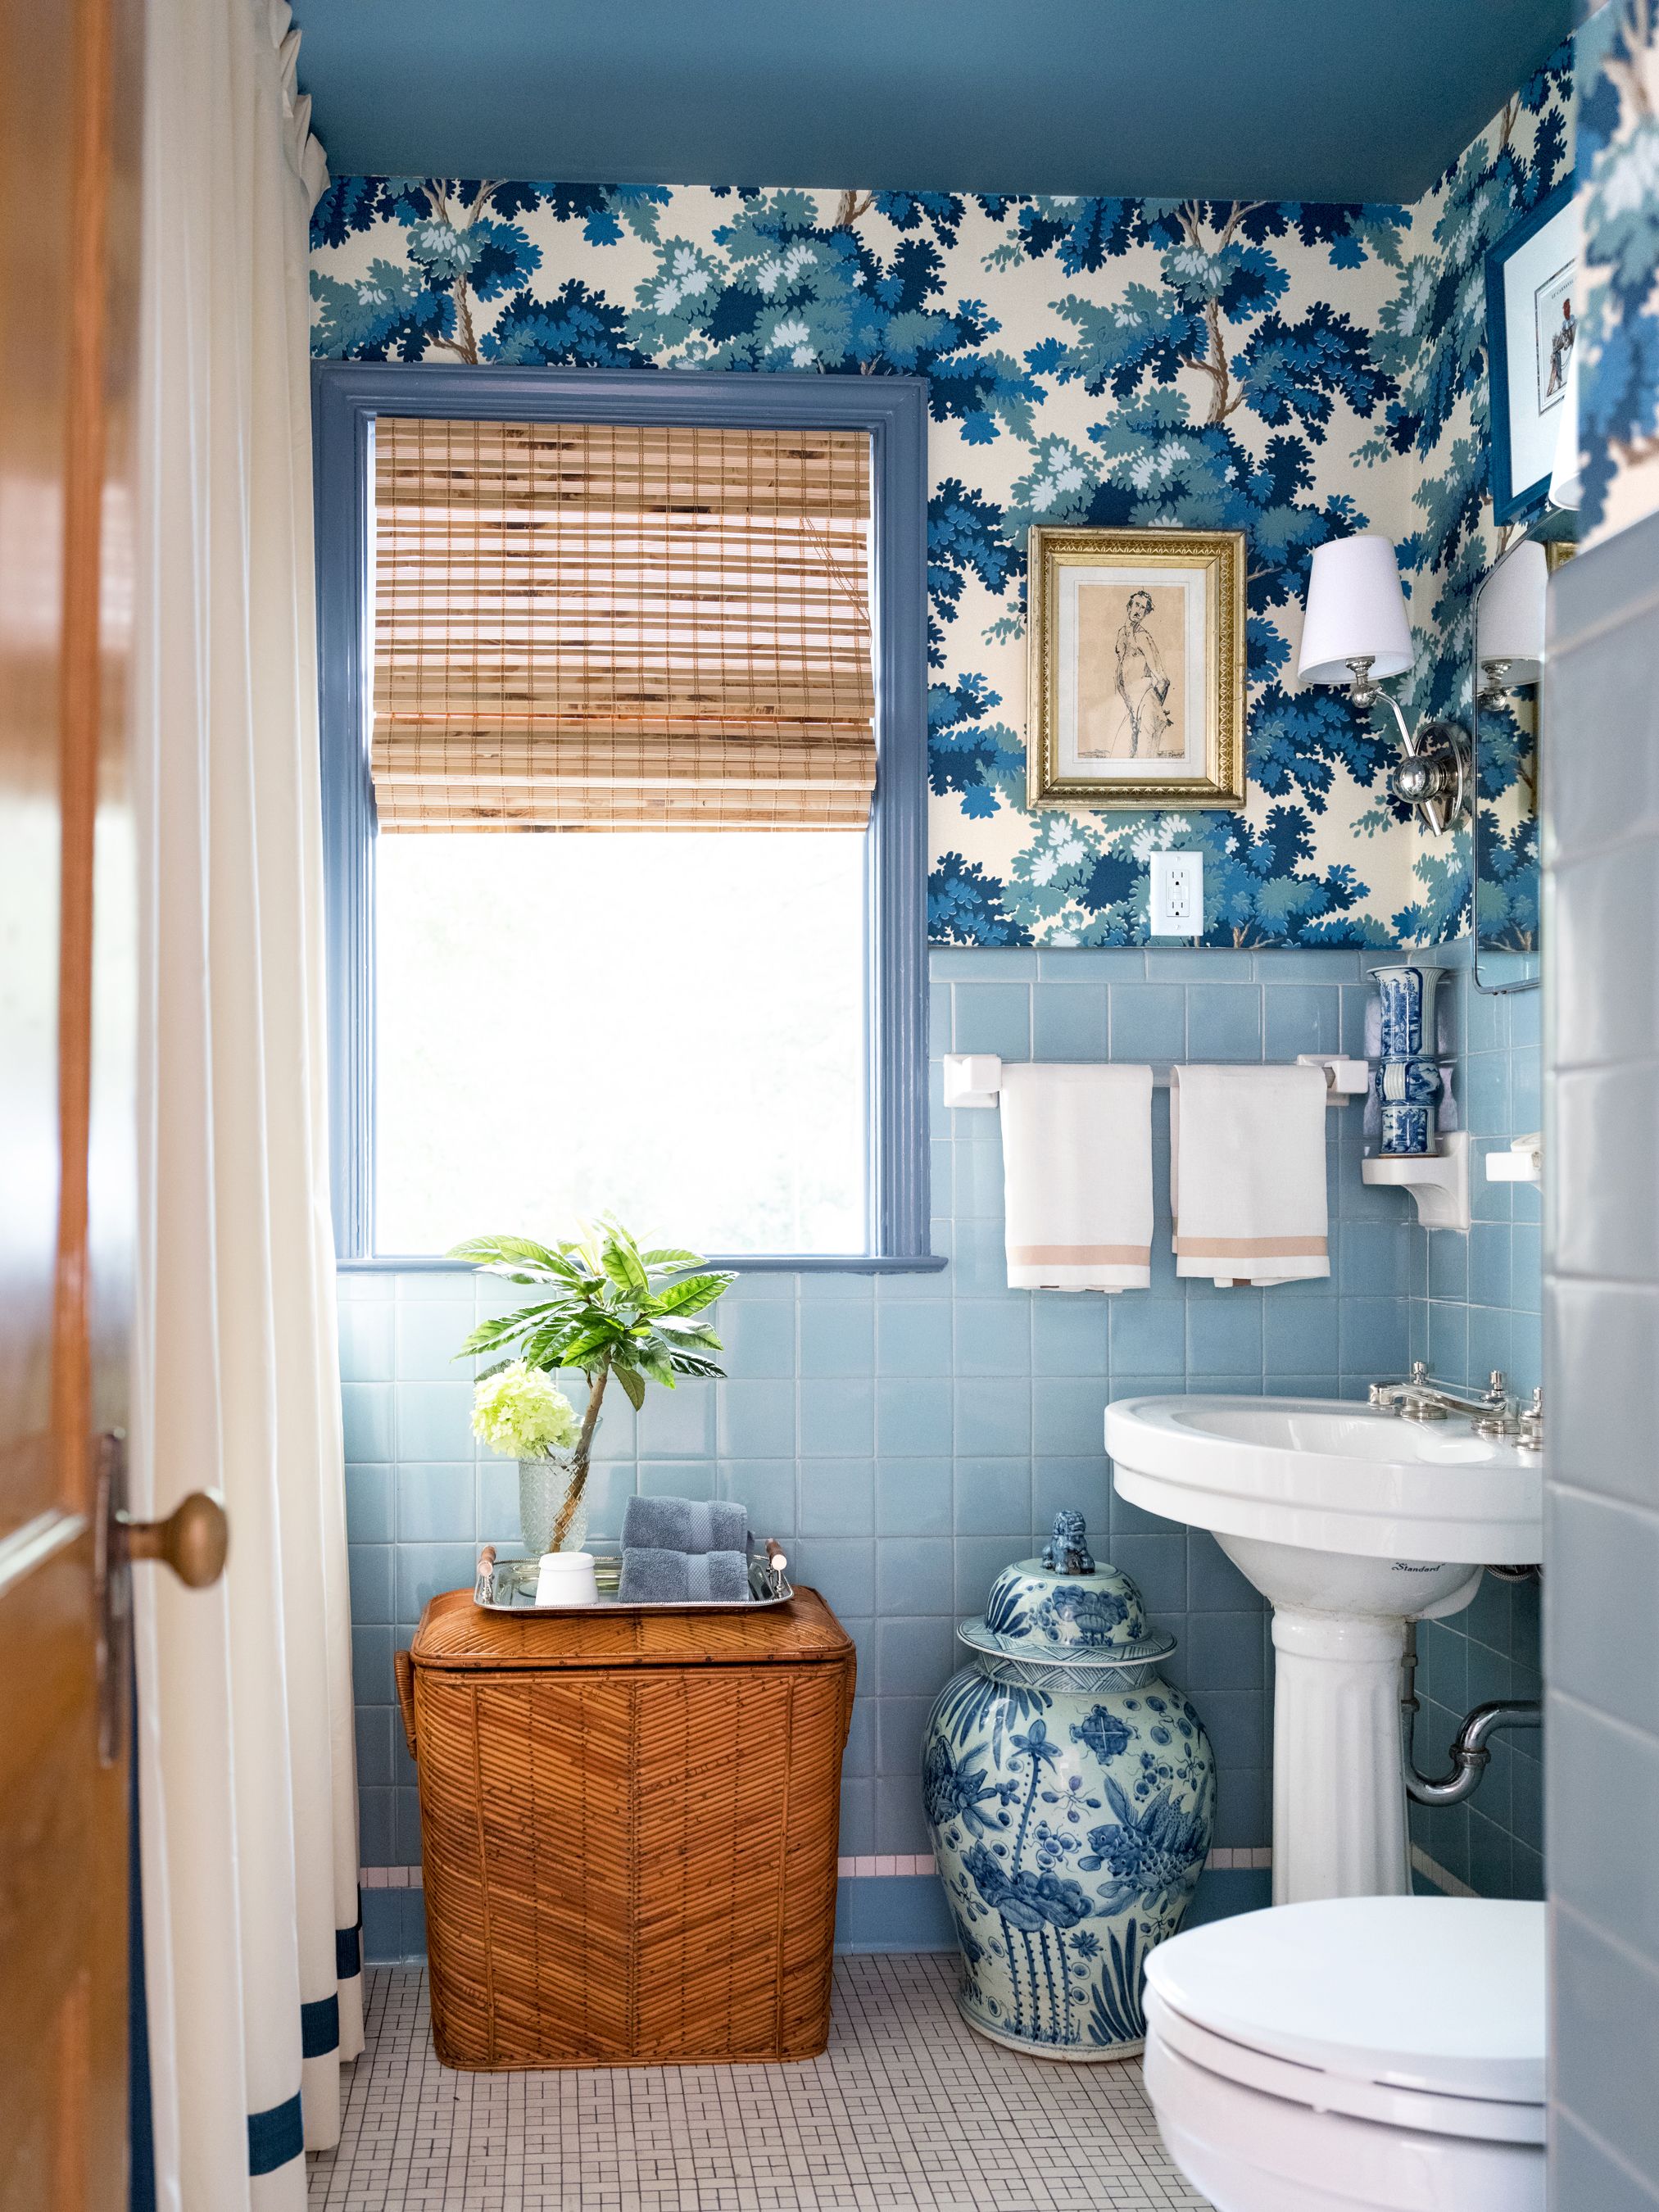 55 Bathroom Tile Ideas Bath, Small Bathroom Tile Designs And Colors